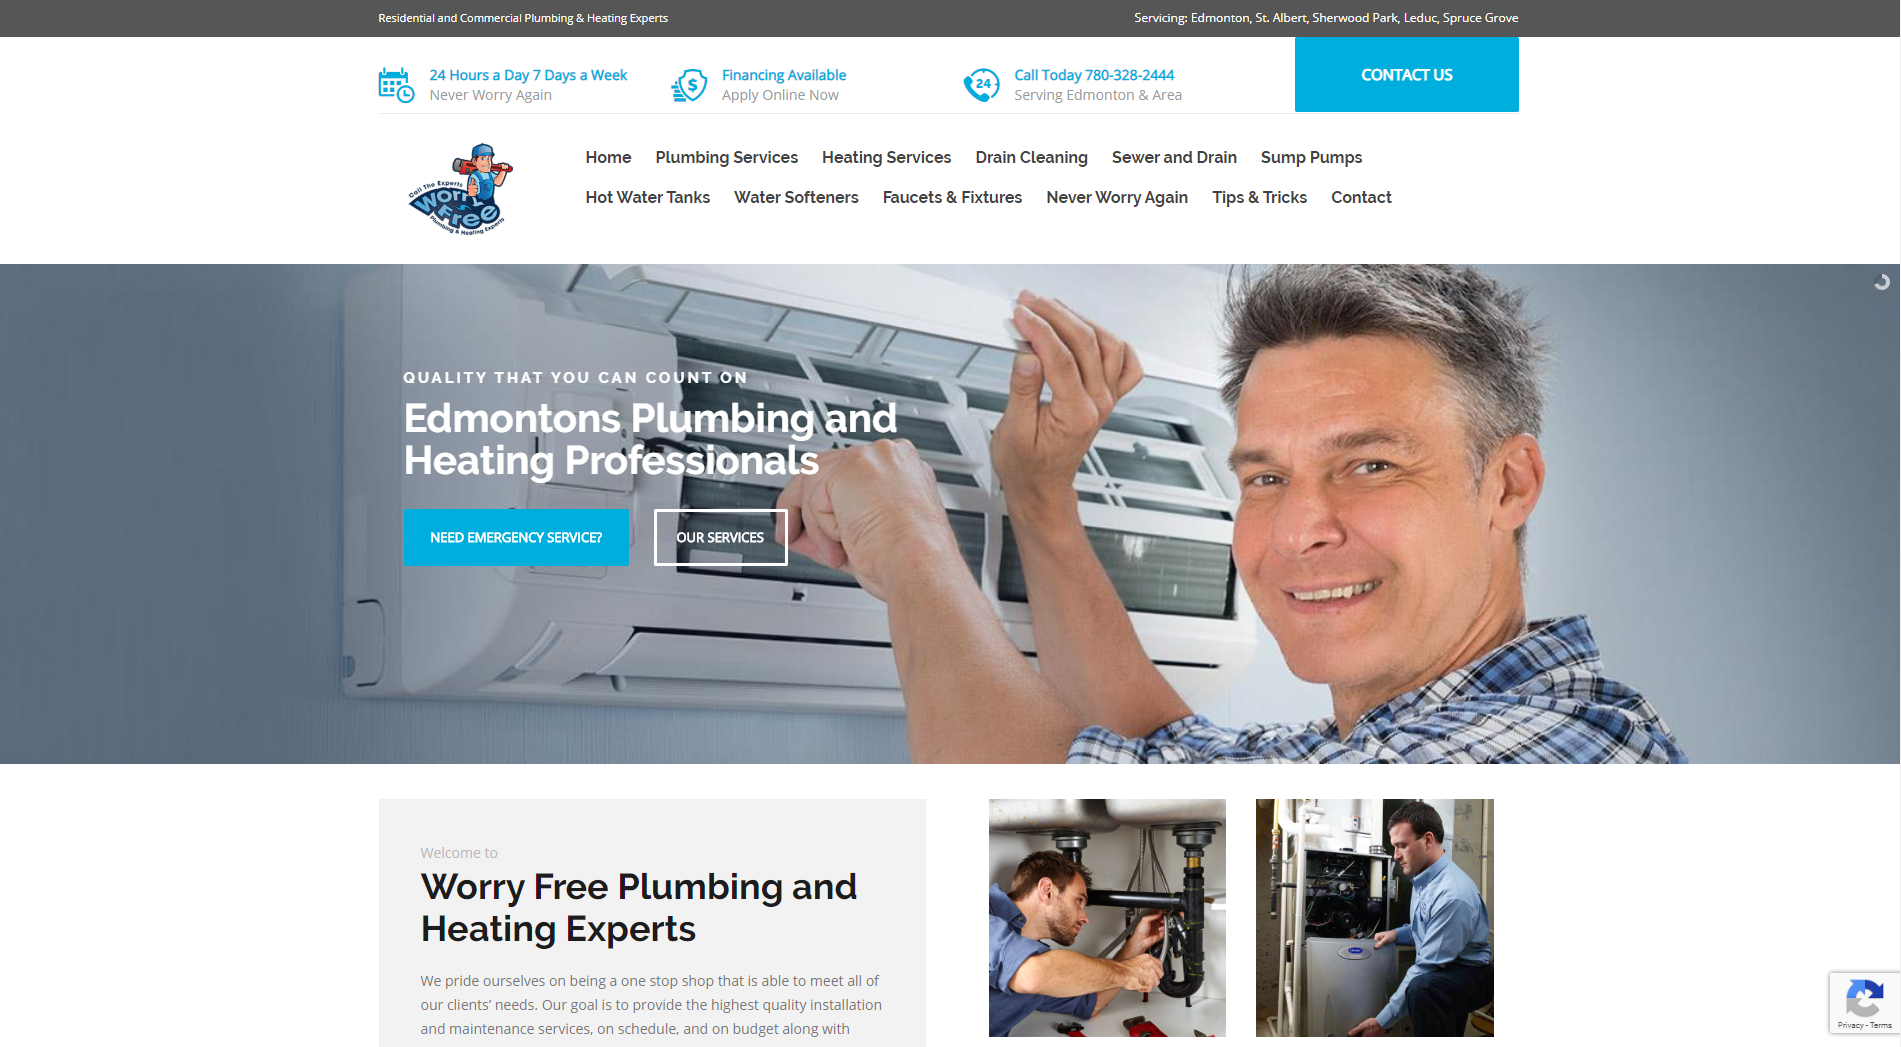 Website Design - Worry Free Plumbing